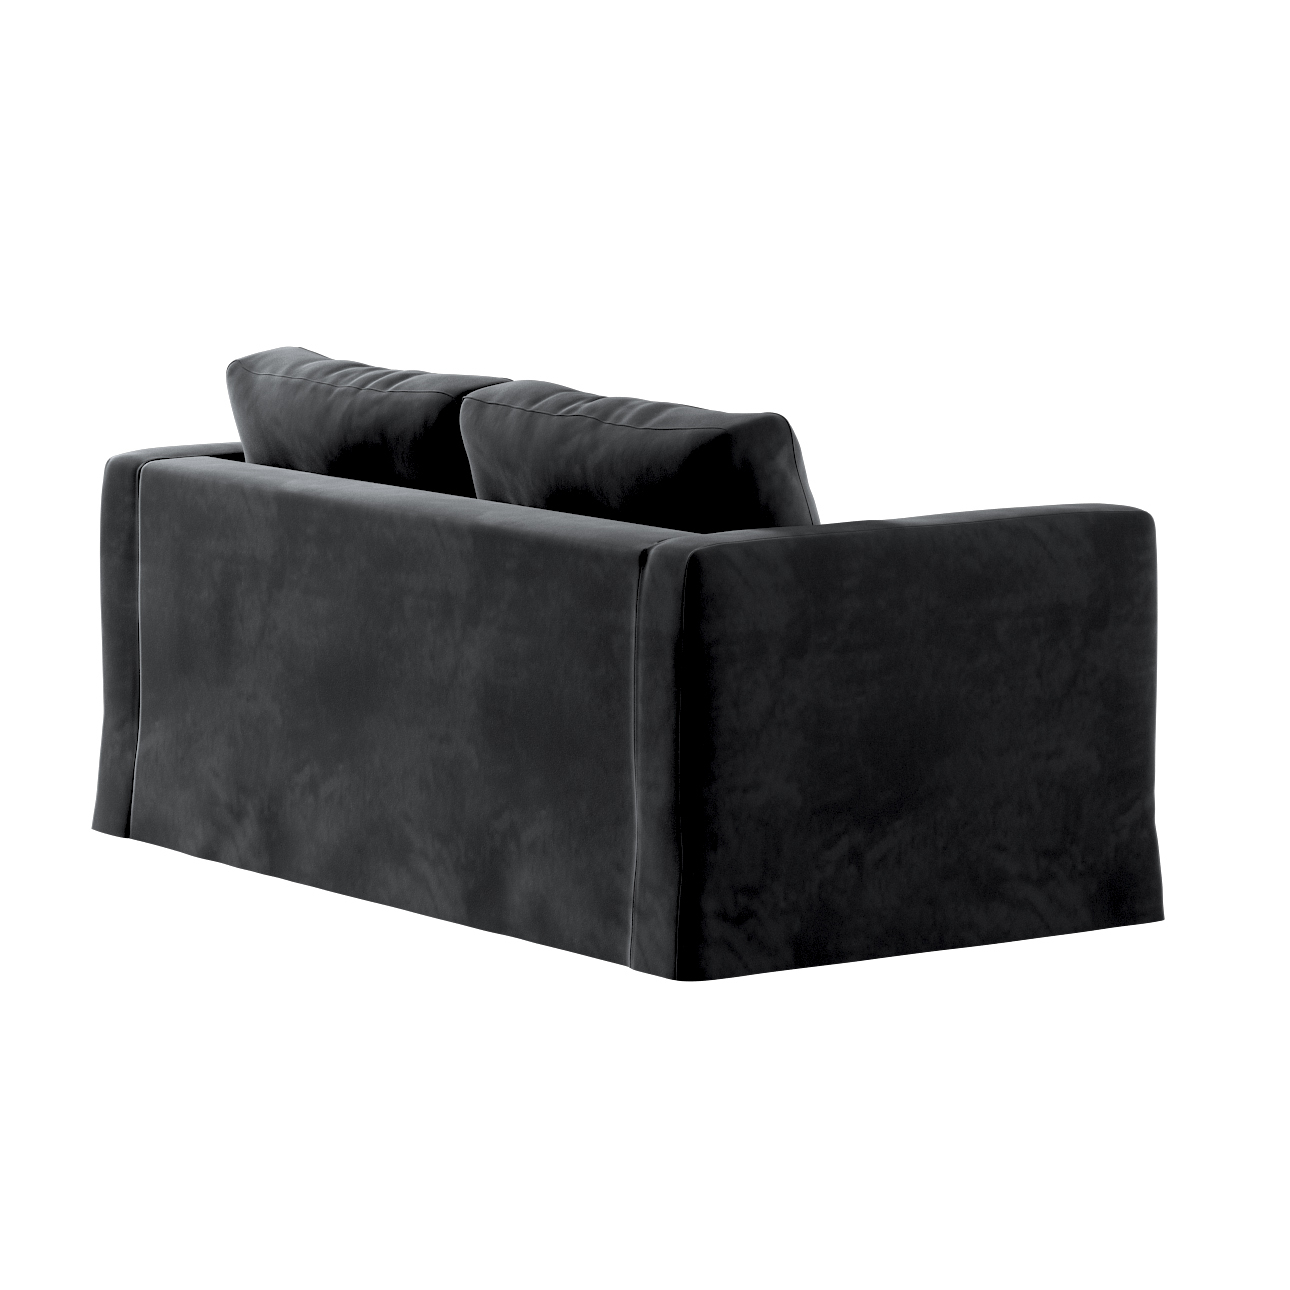 Bezug für Karlstad 2-Sitzer Sofa nicht ausklappbar, lang, schwarz, Sofahuss günstig online kaufen